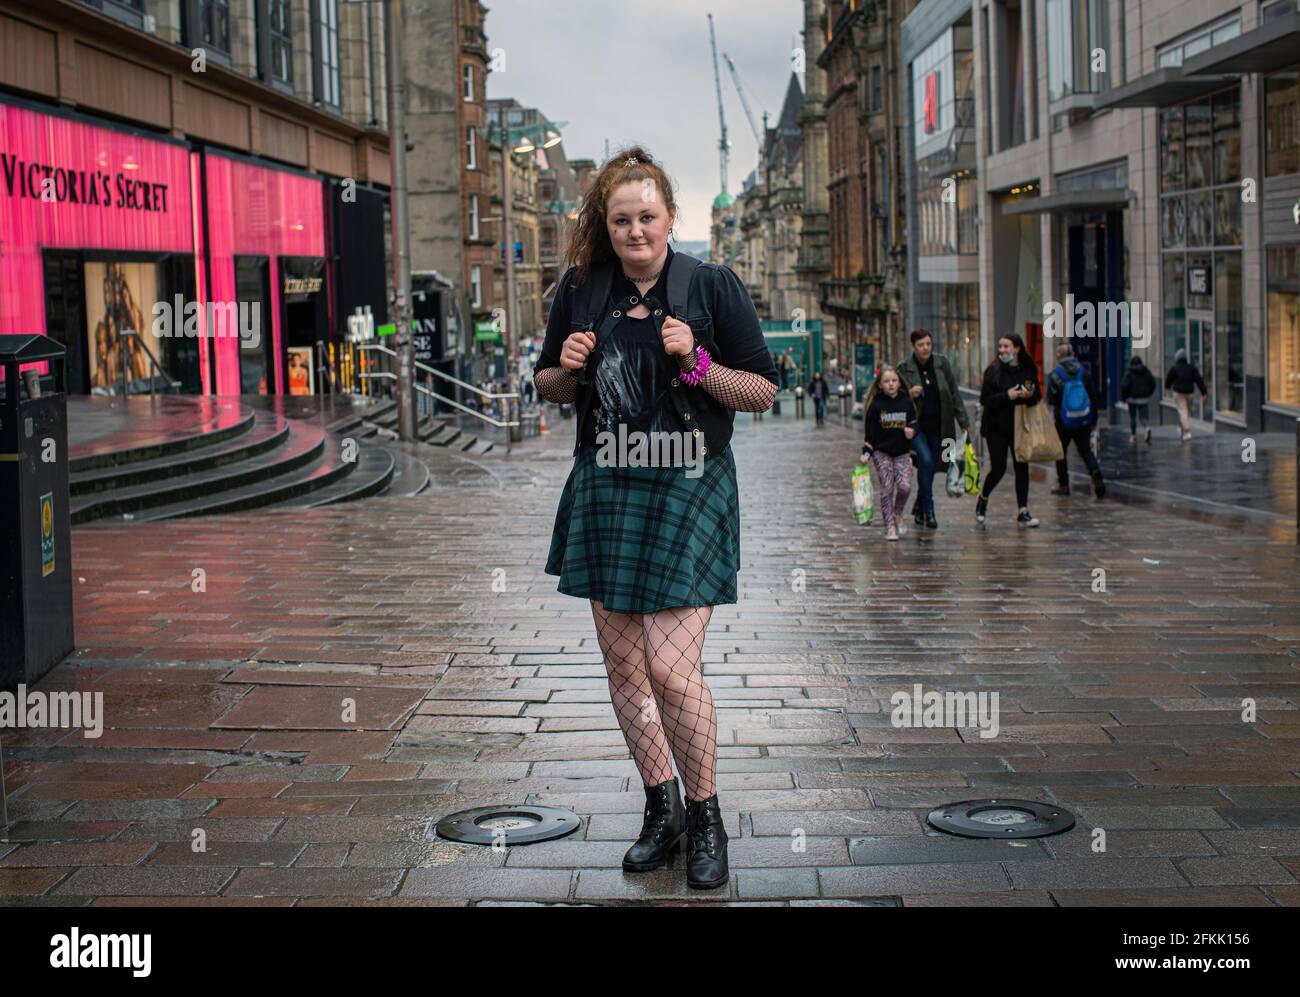 Potrait de jeune femme portant une jupe tartan et des bas filet dans une rue commerçante vide dans le centre de Buchan Street Glasgow, Écosse, Royaume-Uni Banque D'Images